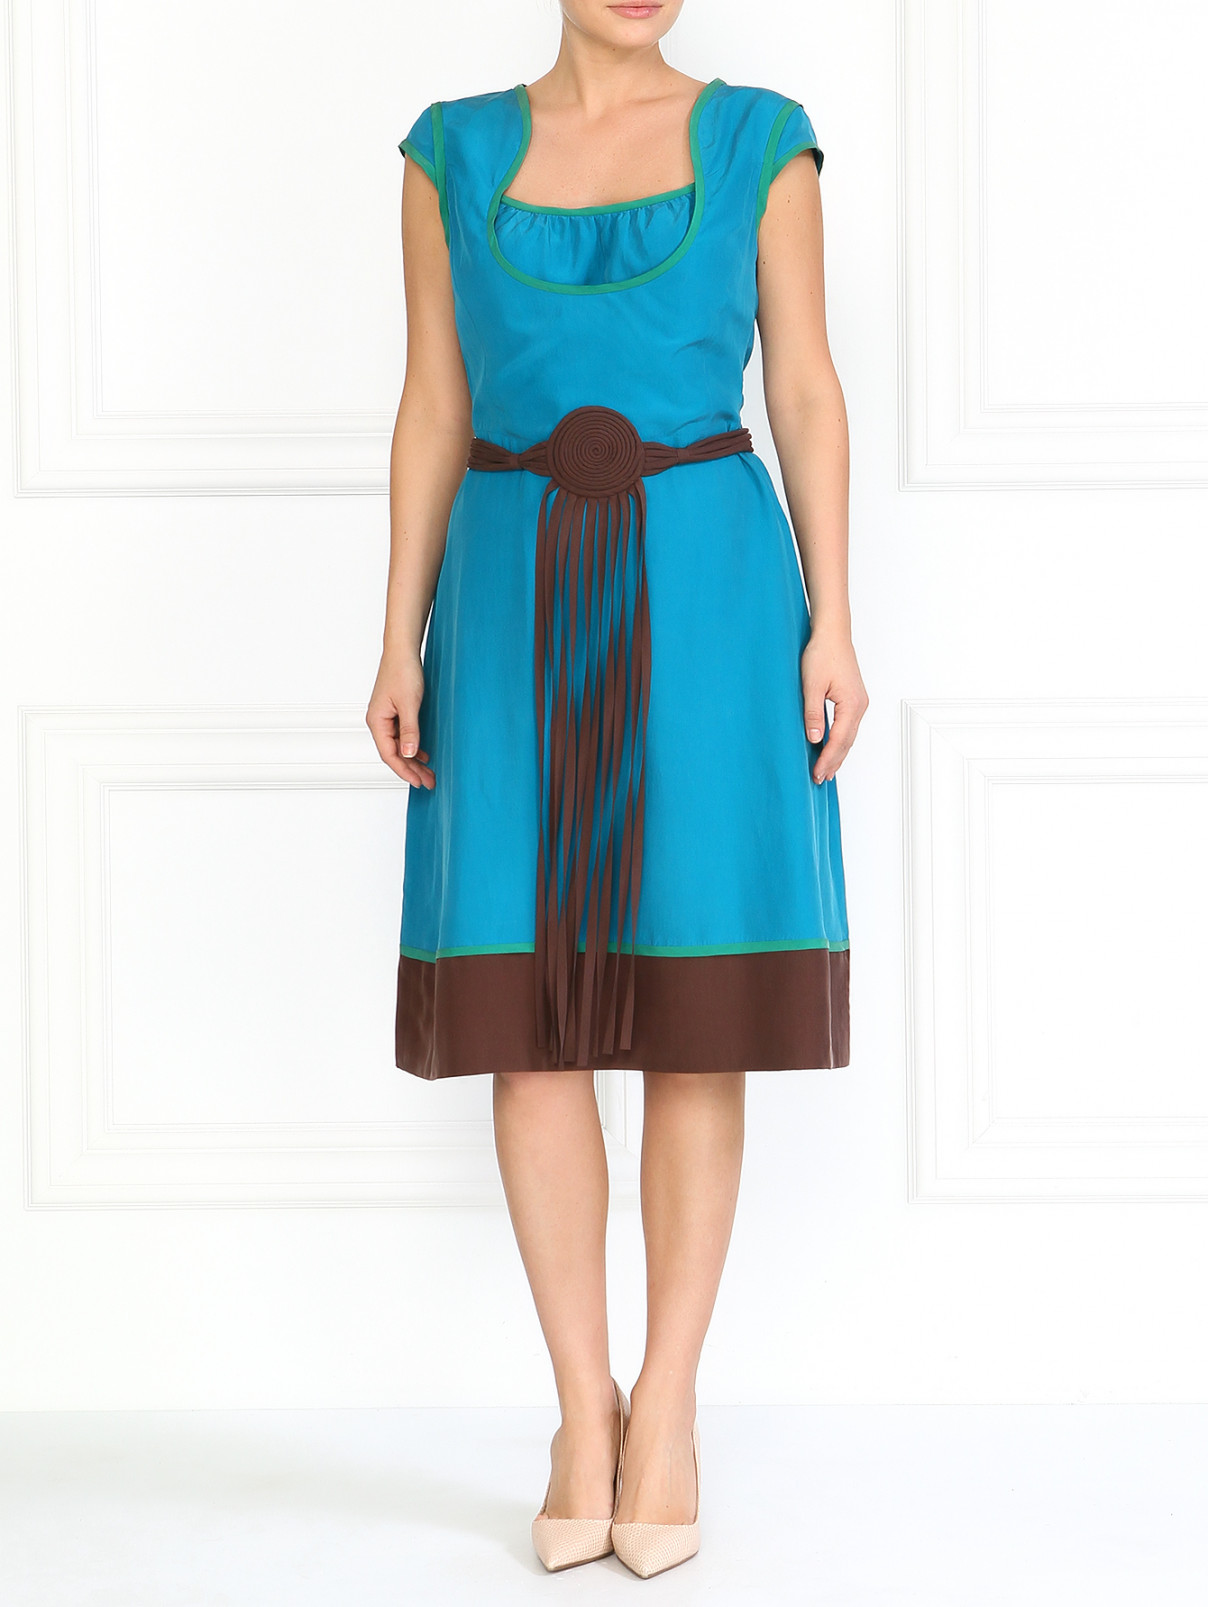 Шелковое платье с кожаным поясом Moschino  –  Модель Общий вид  – Цвет:  Синий